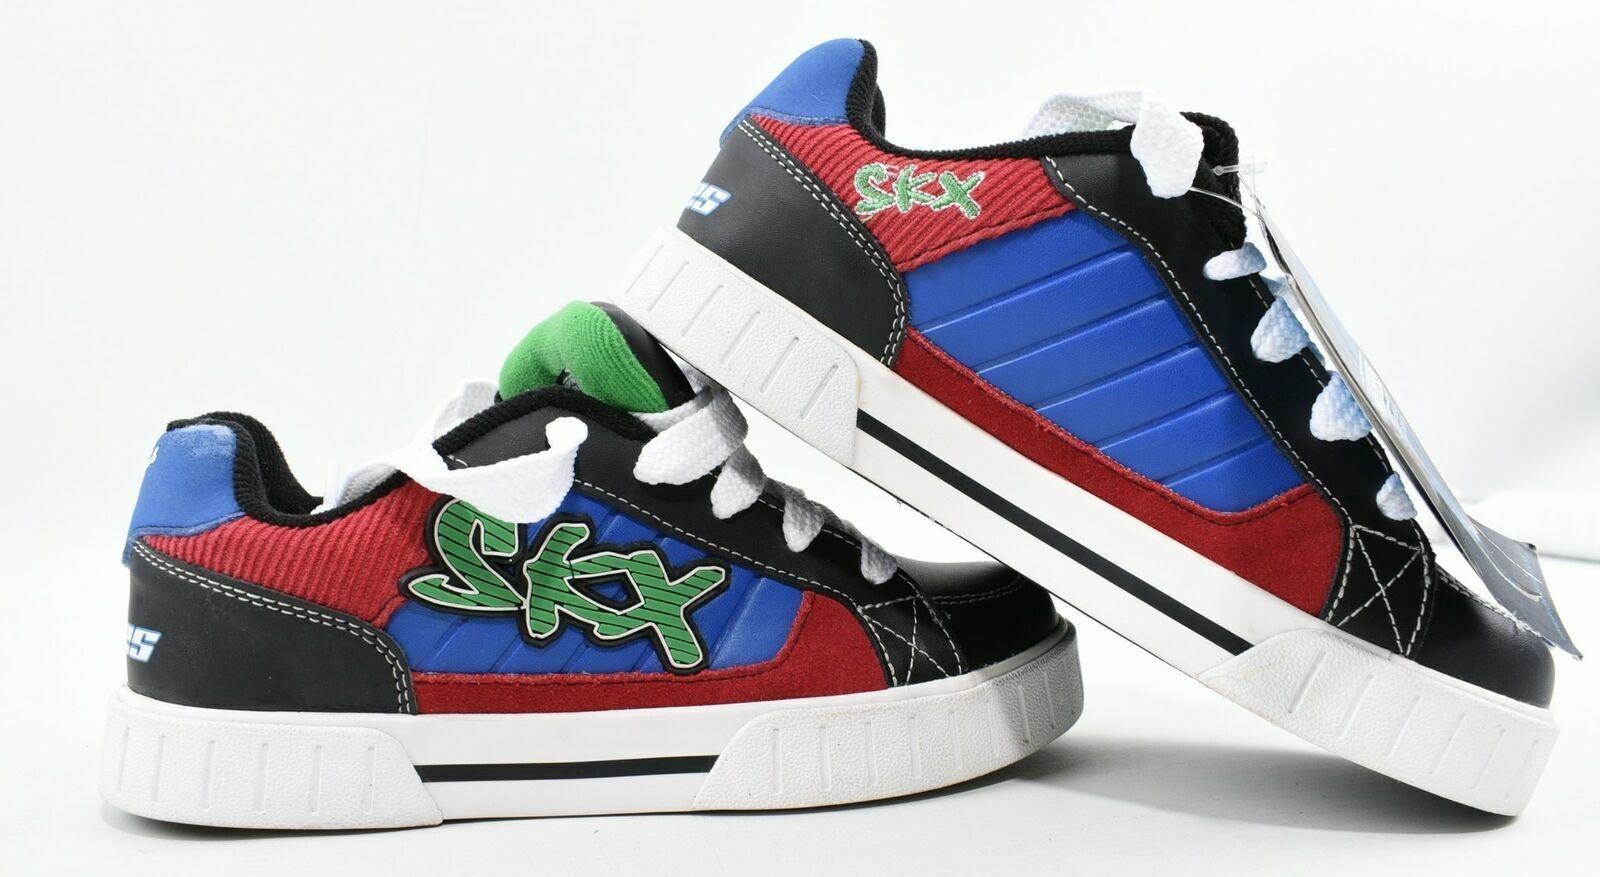 SKECHERS SKX Boy's Black/Blue/Red/Green/White Skate Shoes-UK junior 2 EU 35